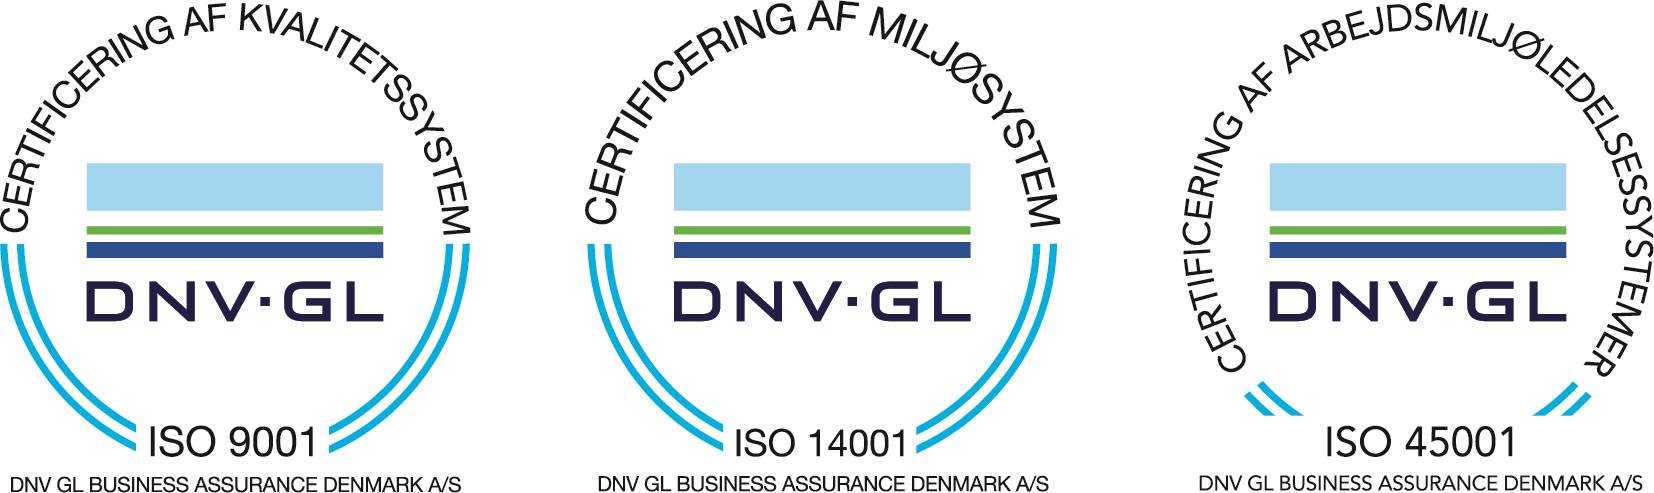 DK ISO9001 ISO14001 ISO45001 Aligned COL Outline